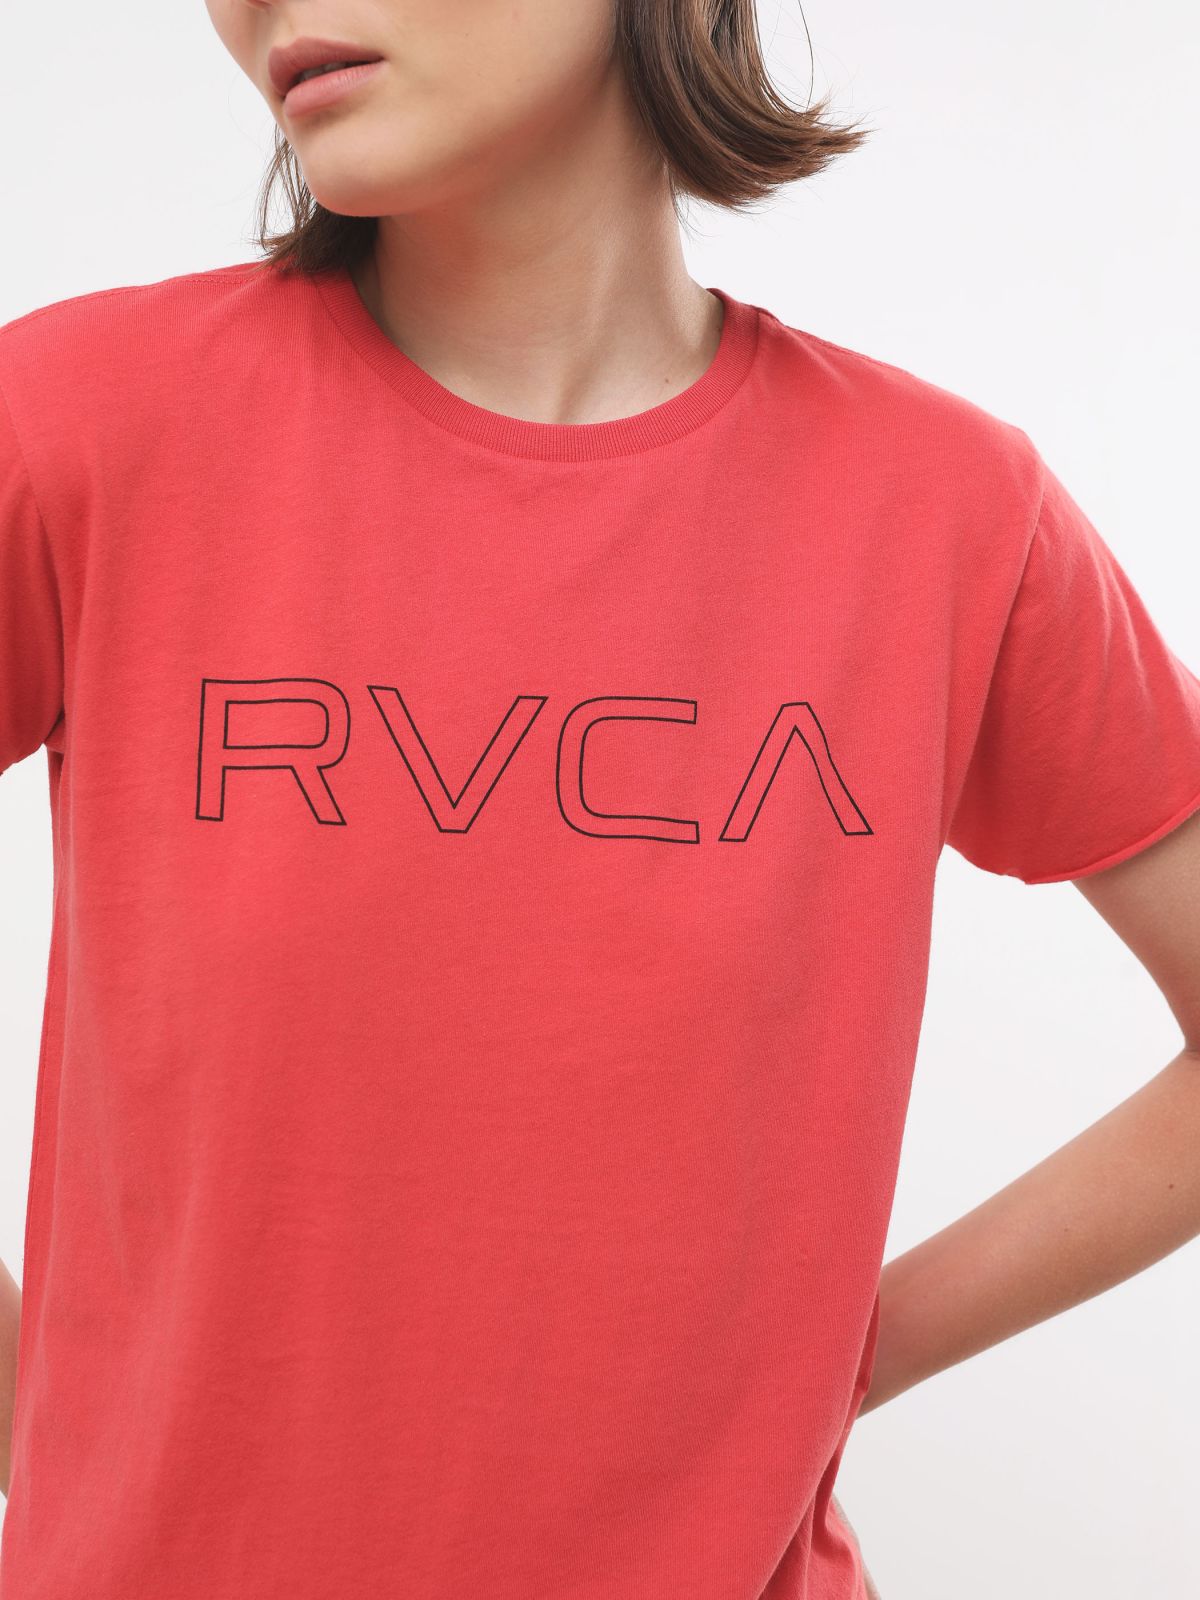  טי שירט עם הדפס לוגו של RVCA